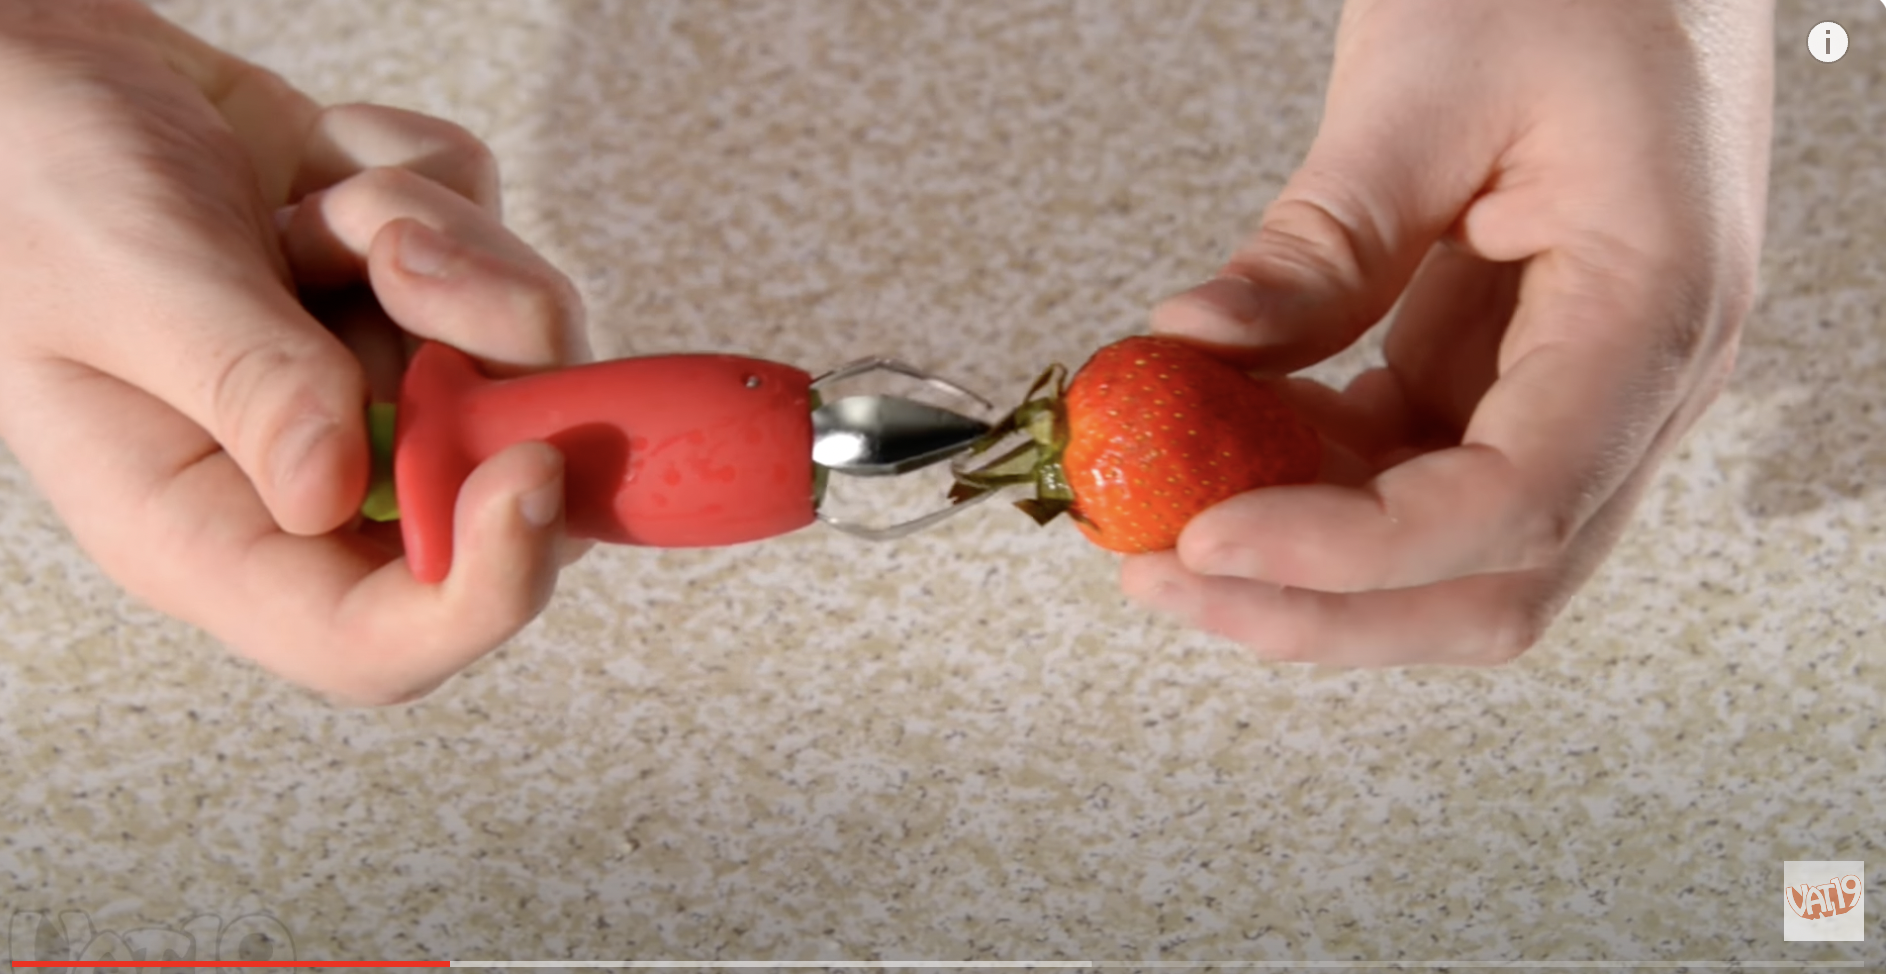 Ein Stielentferner entfernt den Stiel einer Erdbeere. | Quelle: Youtube/Vat19